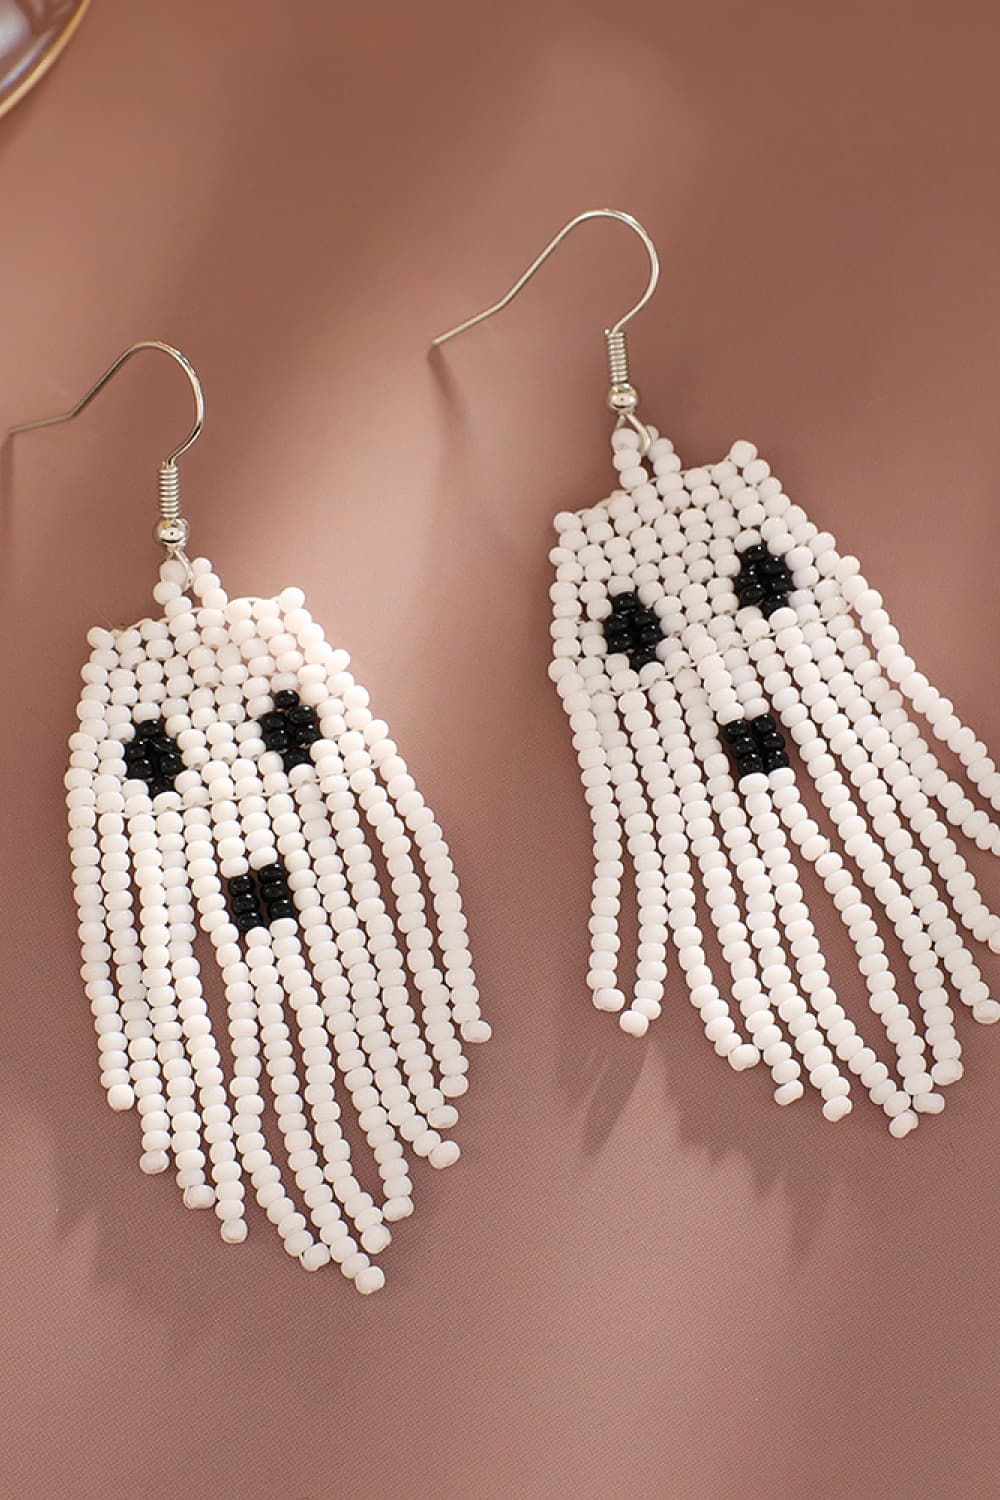 Spooky Fun Beaded Long Dangle Earrings Halloween Jewelry Artisan